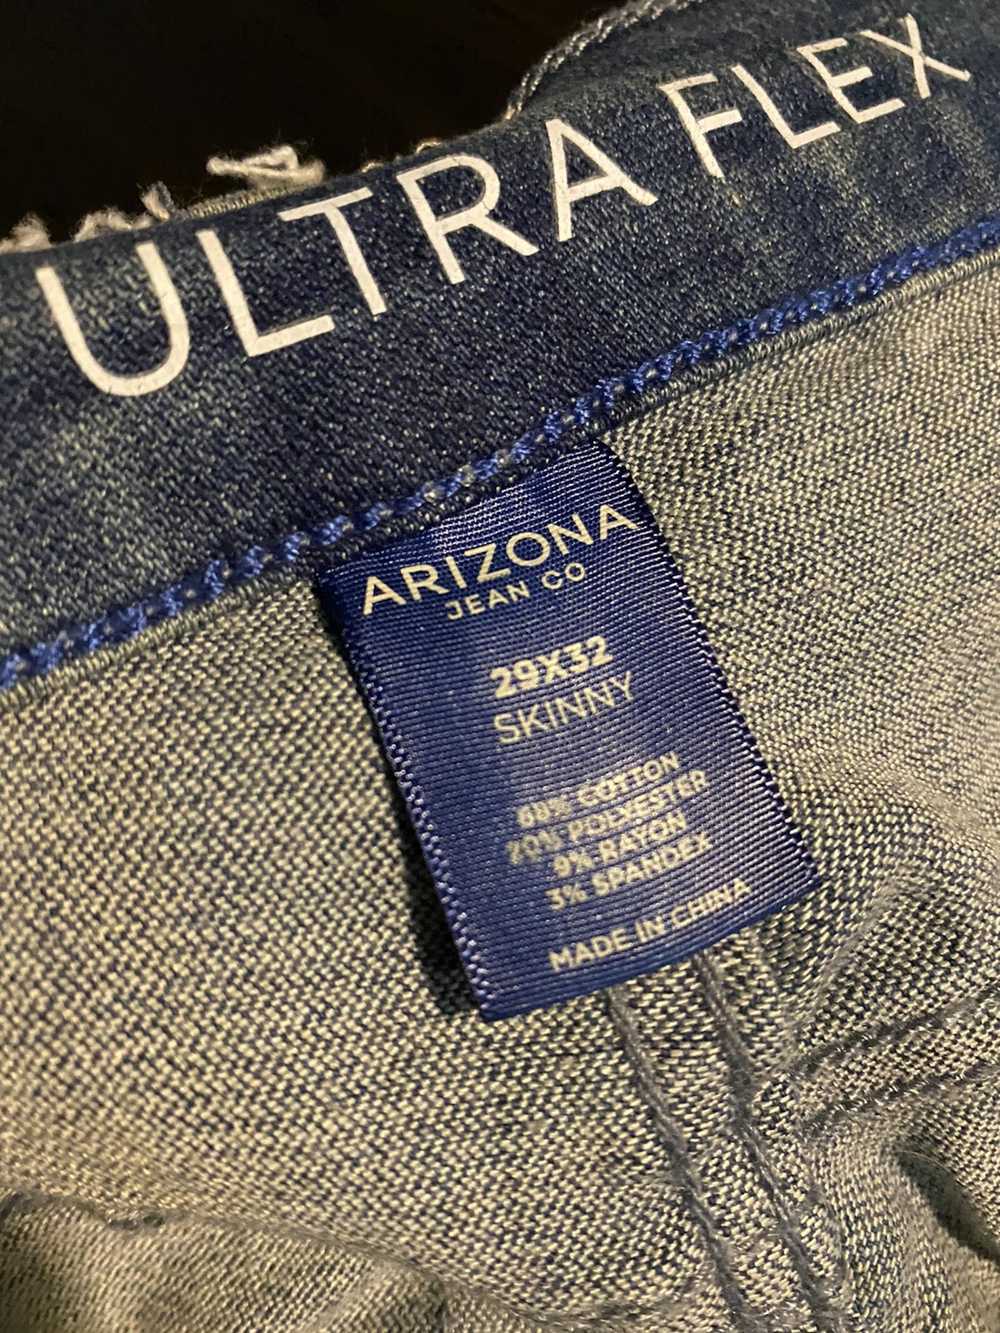 Custom Custom Arizona stretch skinny jeans sz 29 - image 6